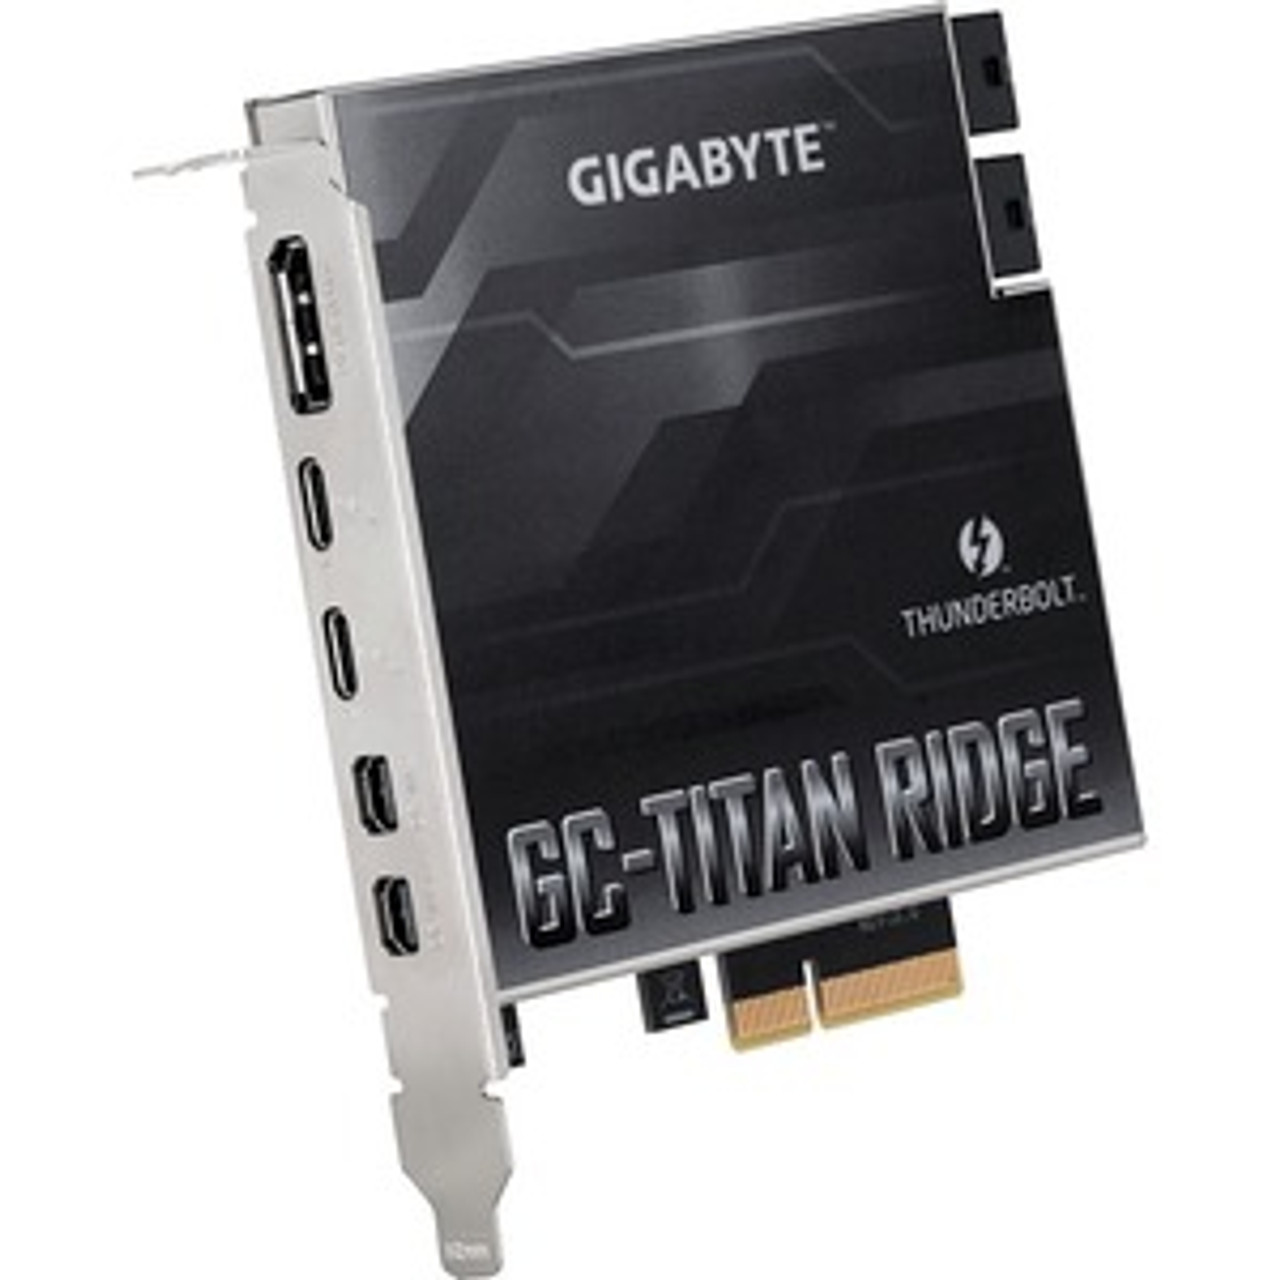 GC-TITAN RIDGE 2.0